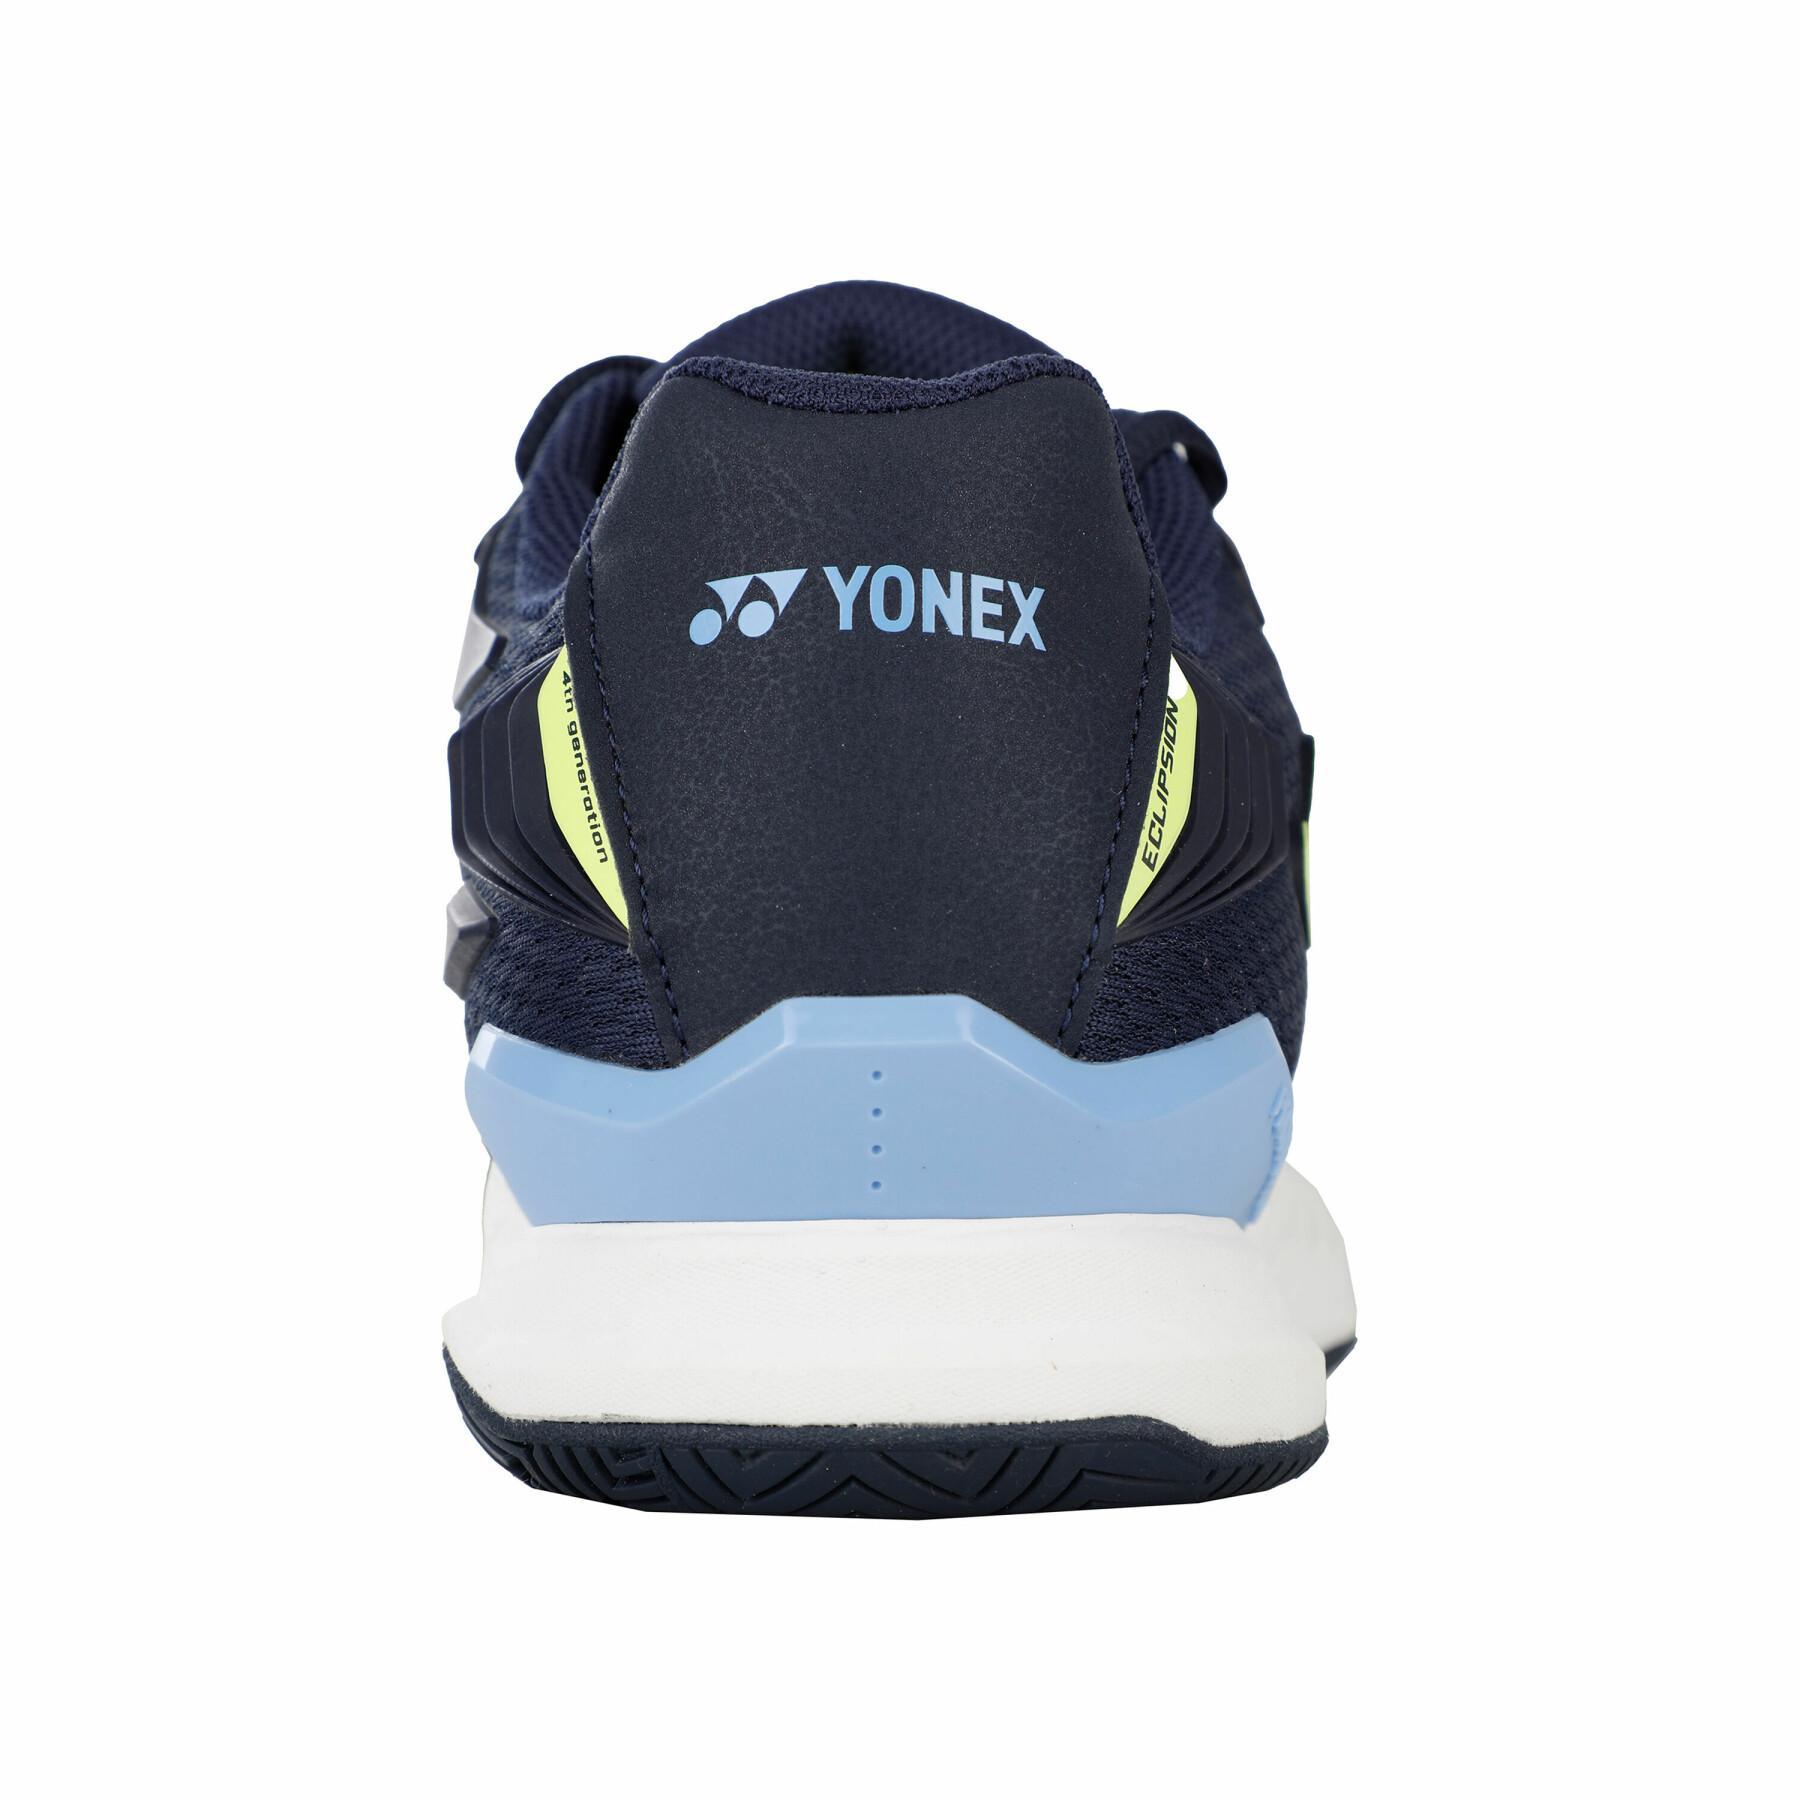 Tennis shoes Yonex Eclipsion 4